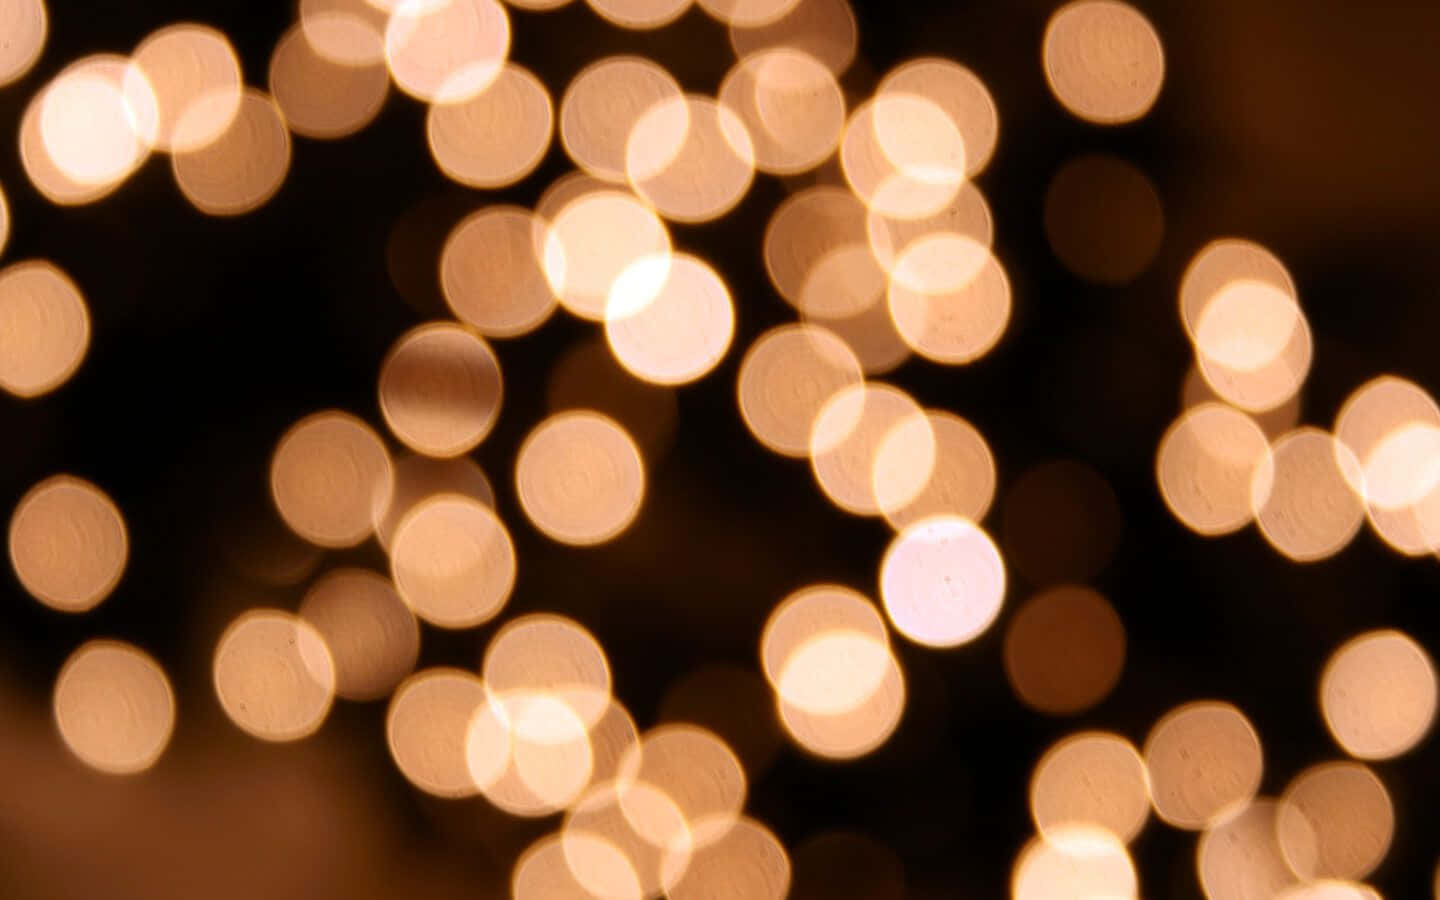 Feiernsie Weihnachten, Indem Sie Ihr Zuhause Mit Lichtern Schmücken.